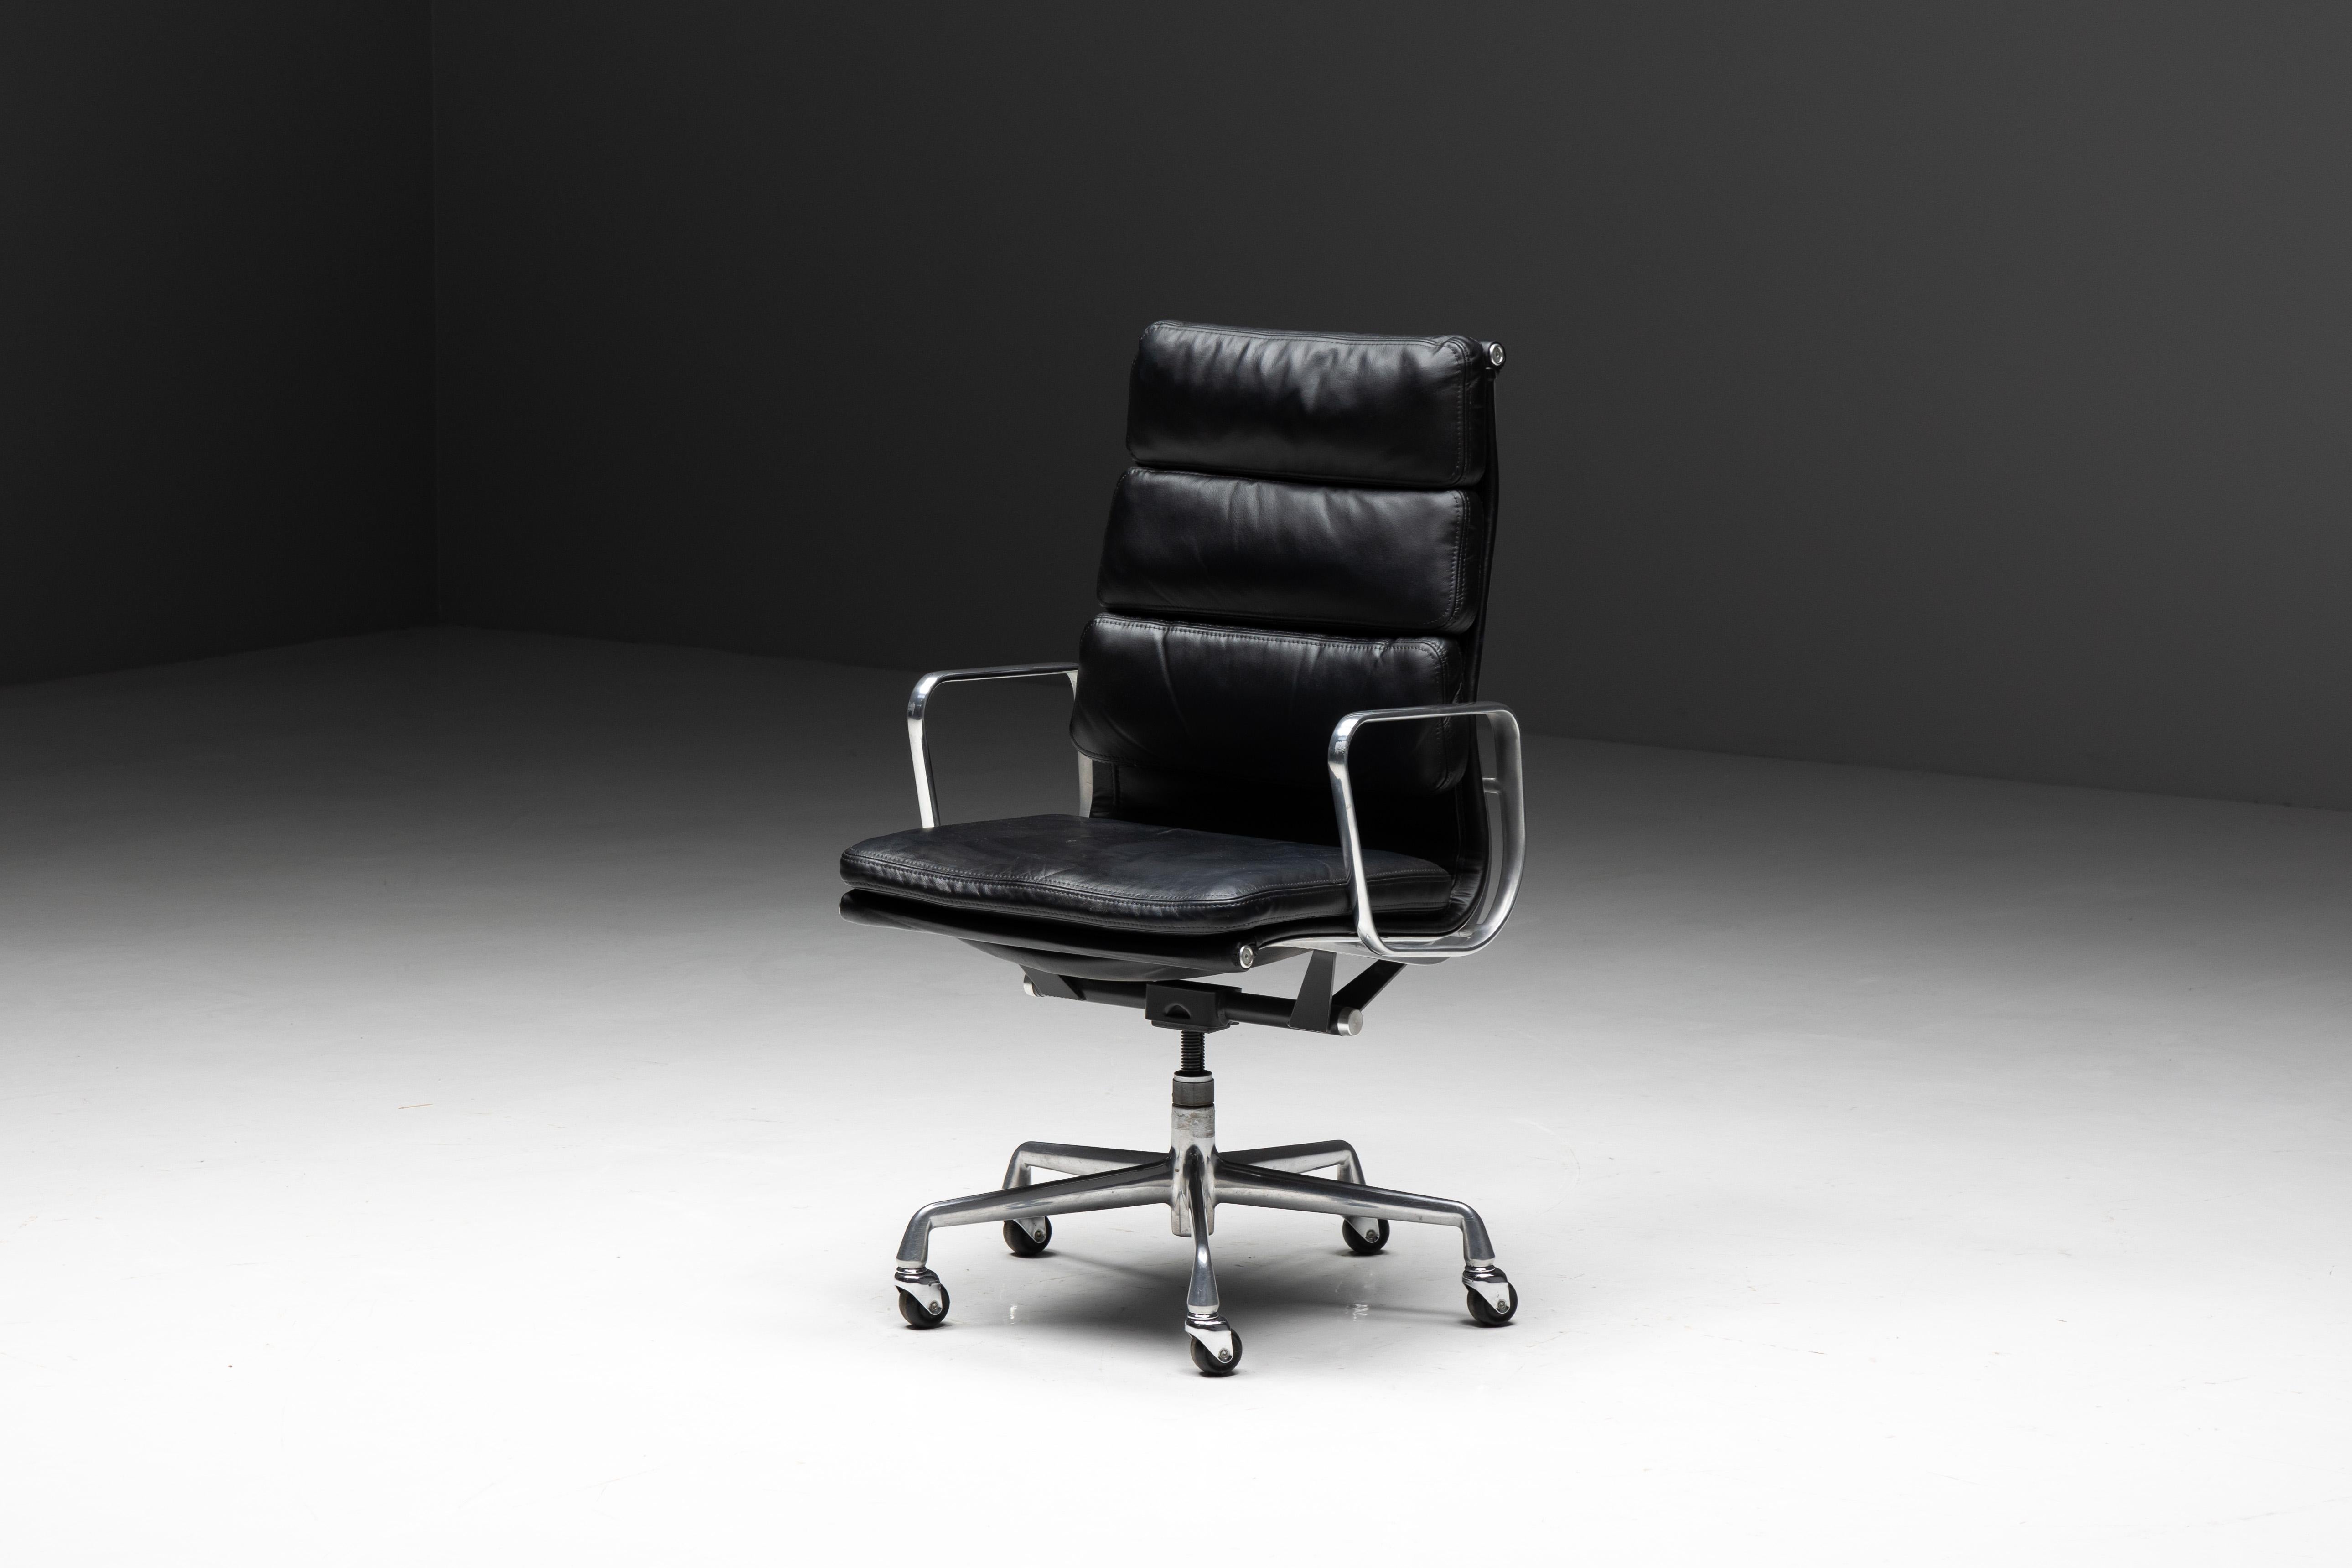 Charles und Ray Eames Softpad Bürostuhl, hergestellt von Herman Miller. Dieser vornehme Stuhl, der als Originalausgabe für Herman Miller in den USA hergestellt wurde, verfügt über einen eleganten Sitz und eine Rückenlehne aus schwarzem Leder, die